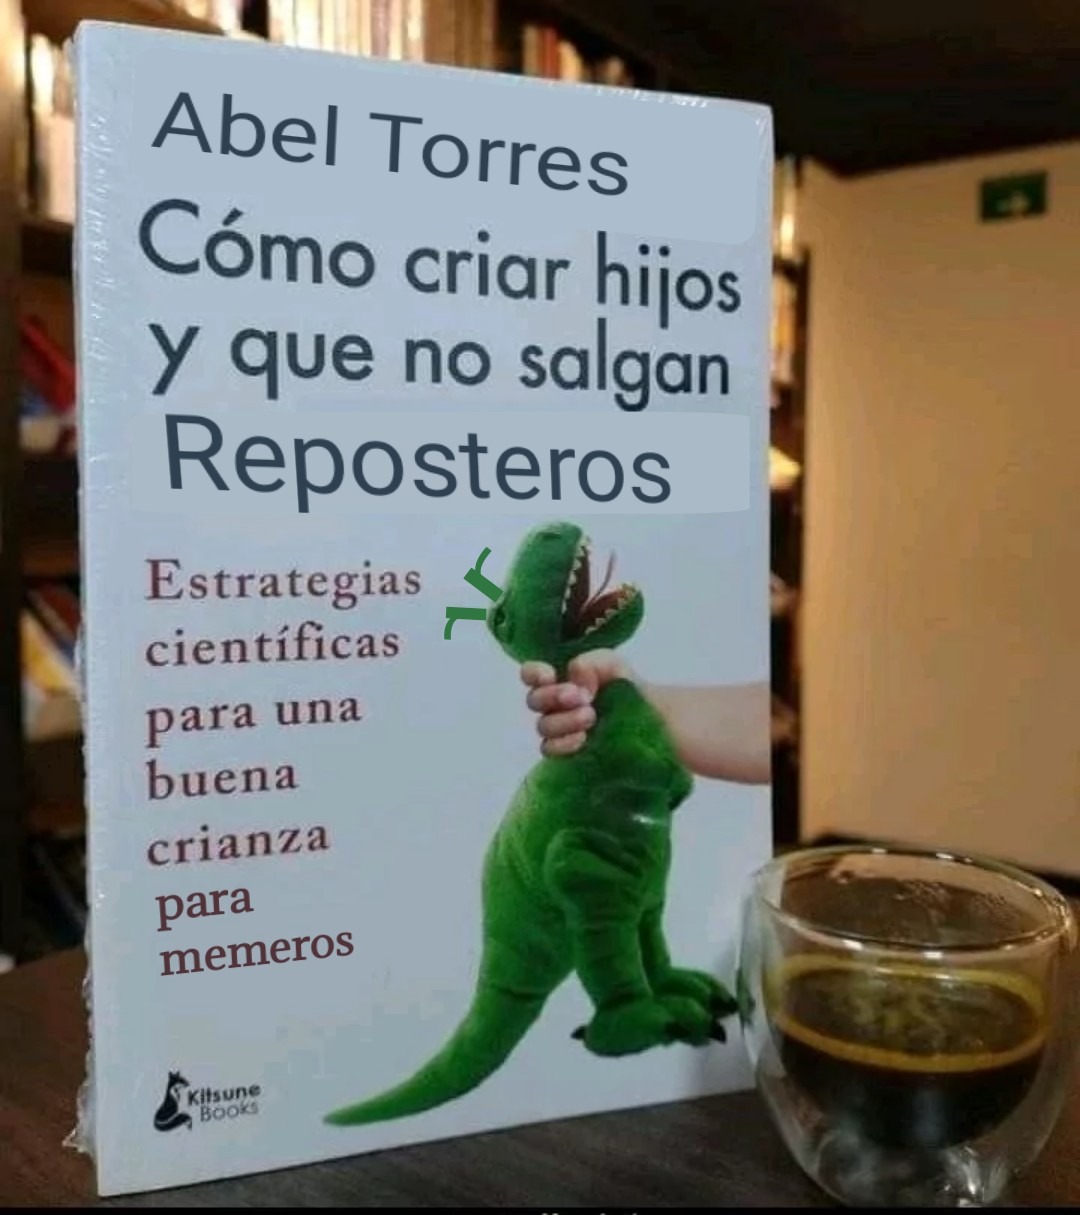 Abel Torres si sacara buenos libros (O al menos si sacara un libro) - meme